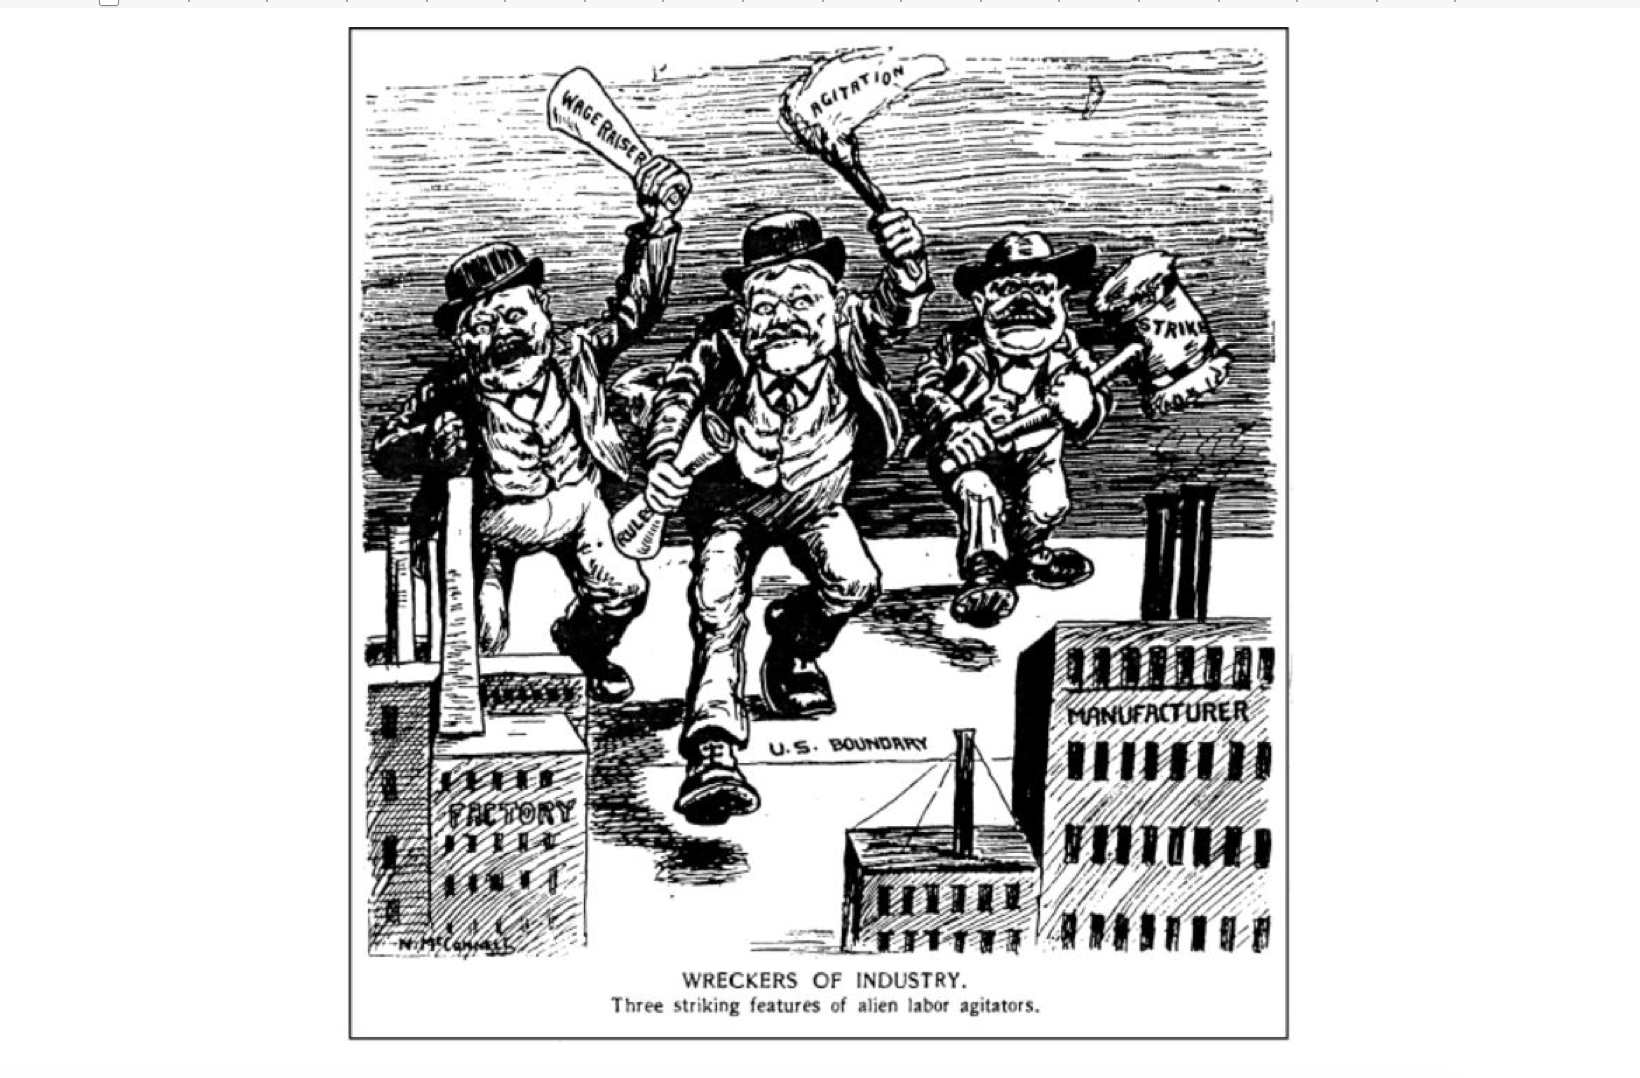 Anti-union cartoon from Saturday Night magazine (Toronto), 1903